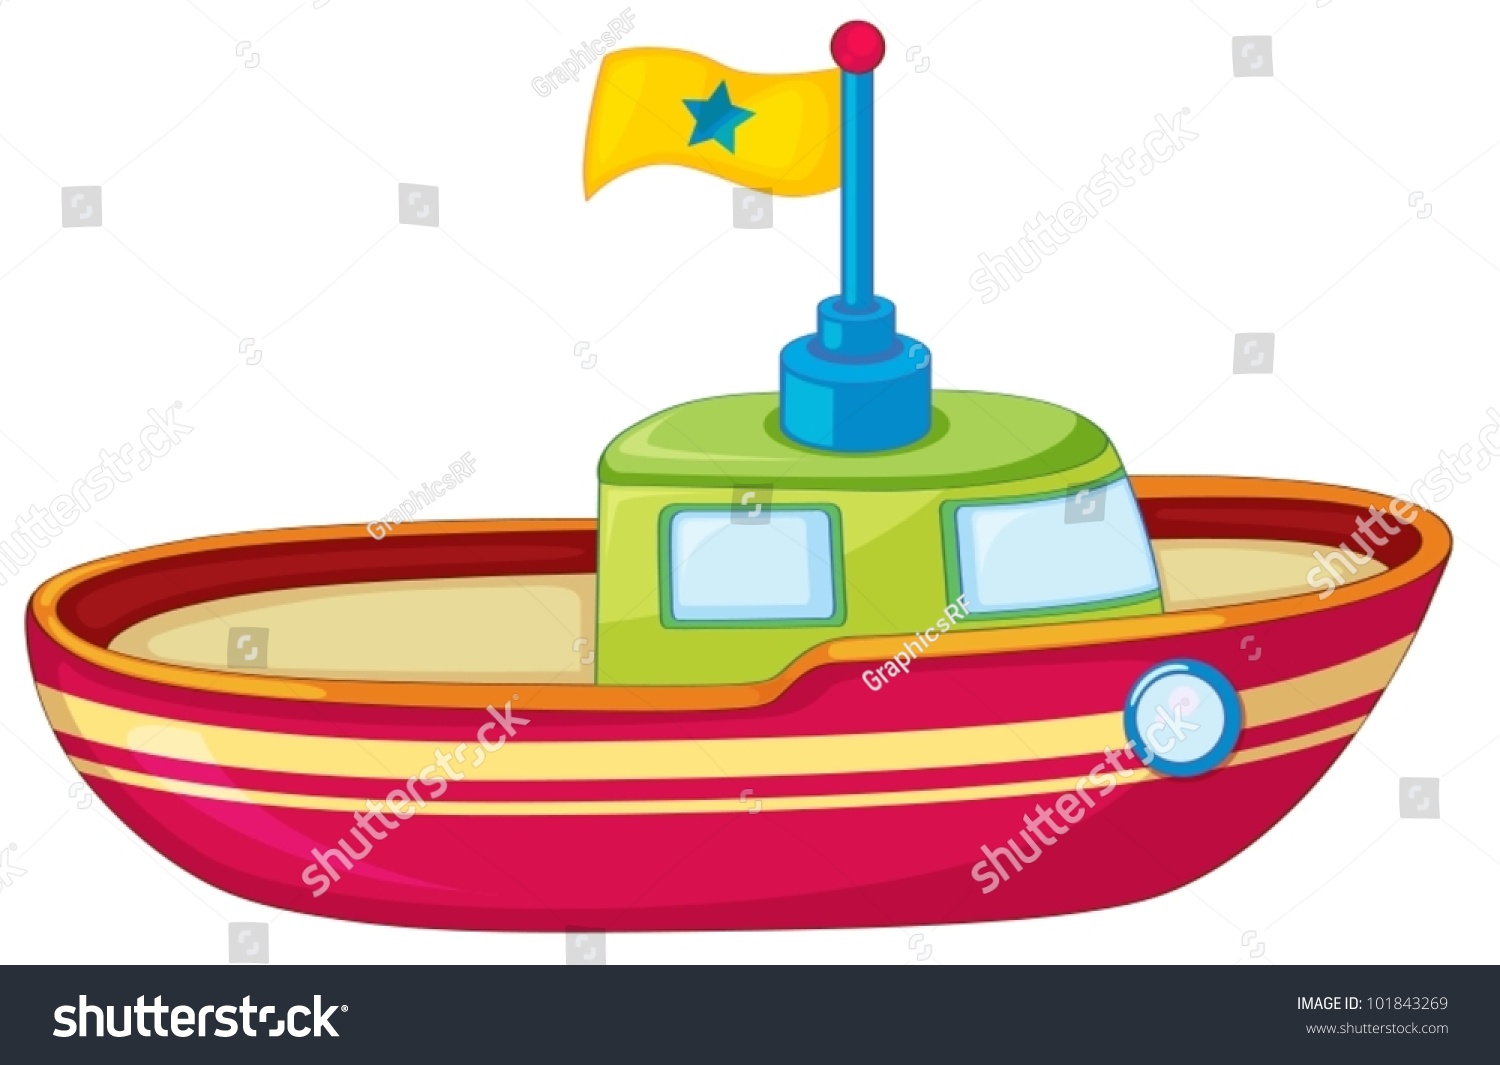 Игрушечная лодка на прозрачном фоне